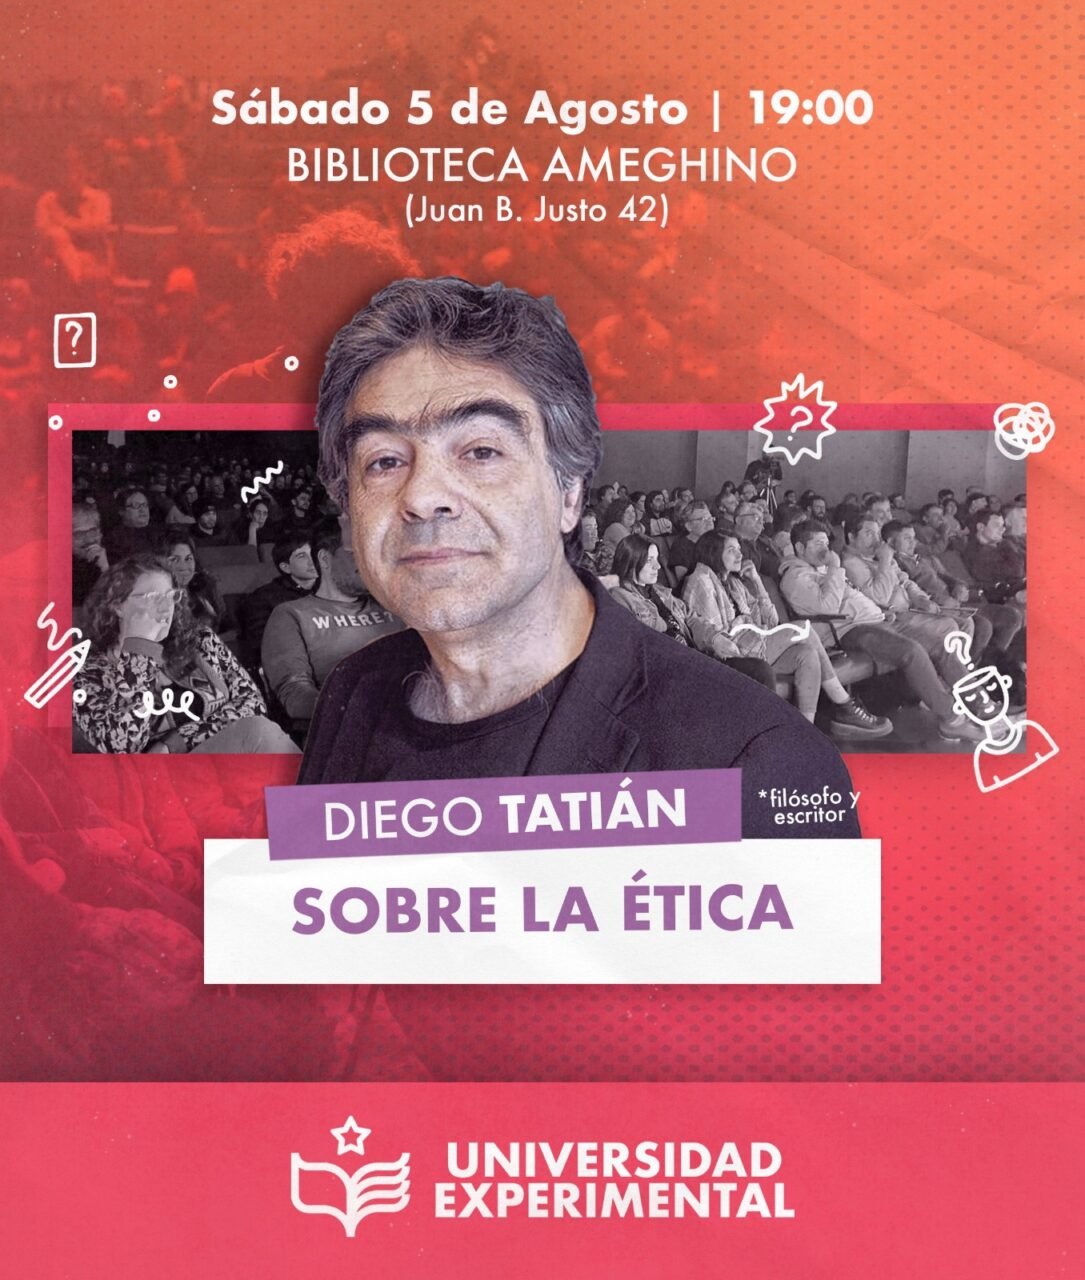 Sábado de charla sobre Ética con el filósofo Diego Tatián